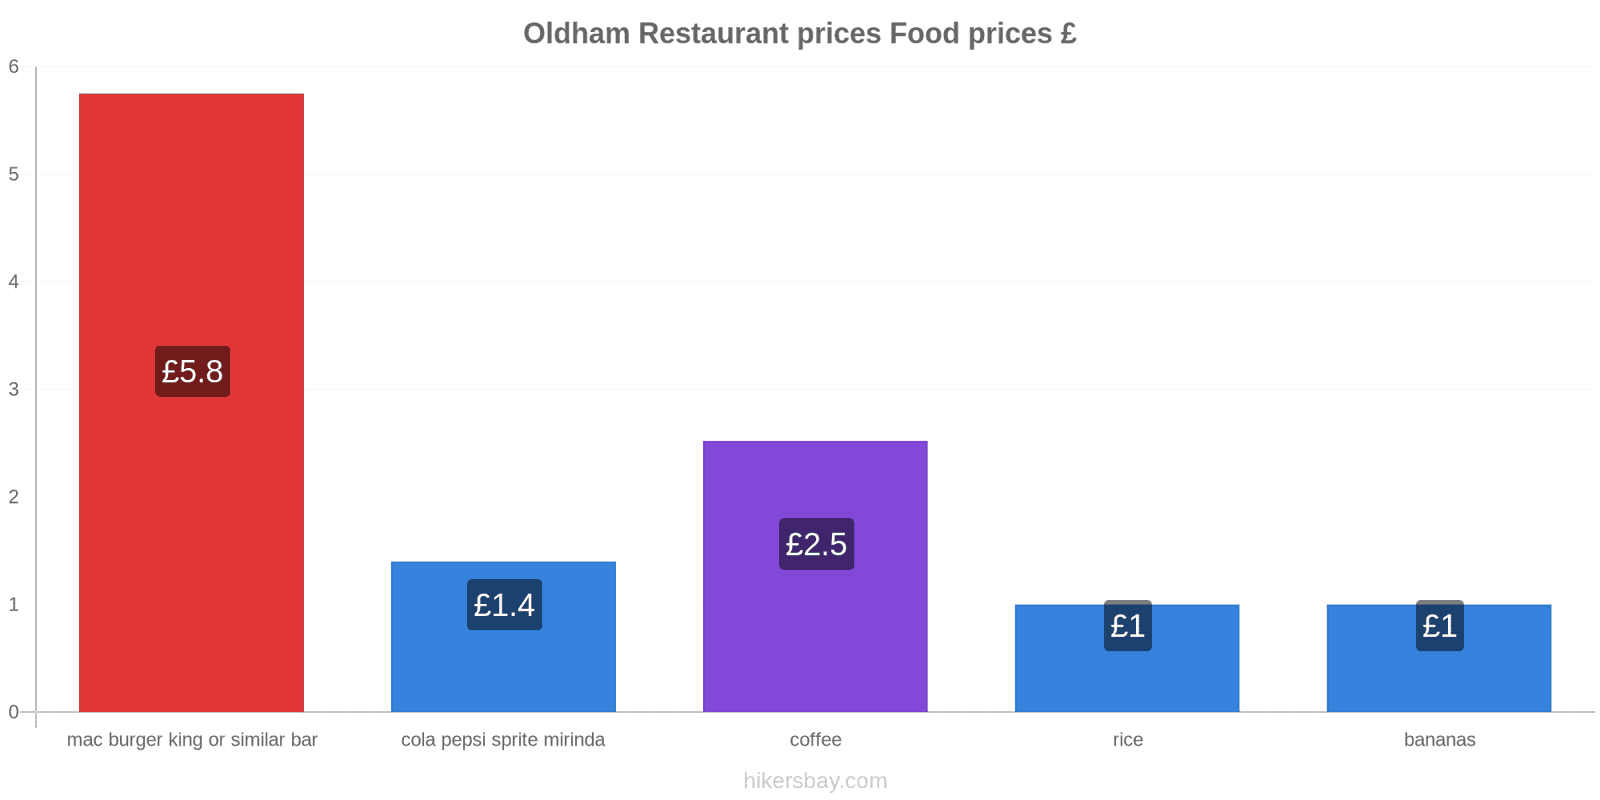 Oldham price changes hikersbay.com